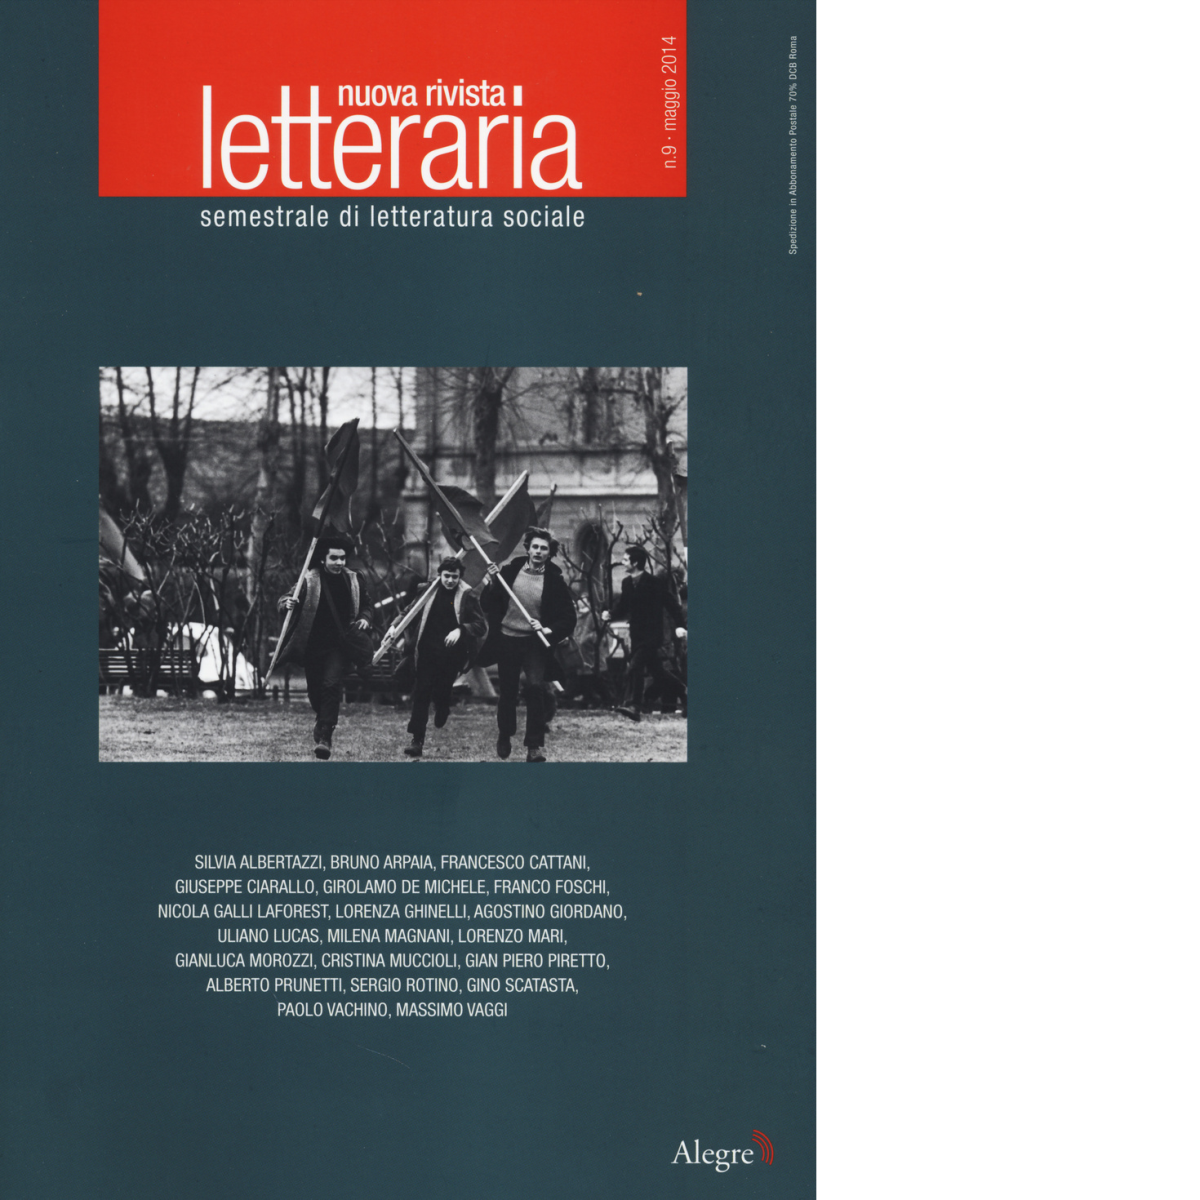 NUOVA RIVISTA LETTERARIA (2014). VOL. 9 di AA.VV. - Edizioni alegre, 2014